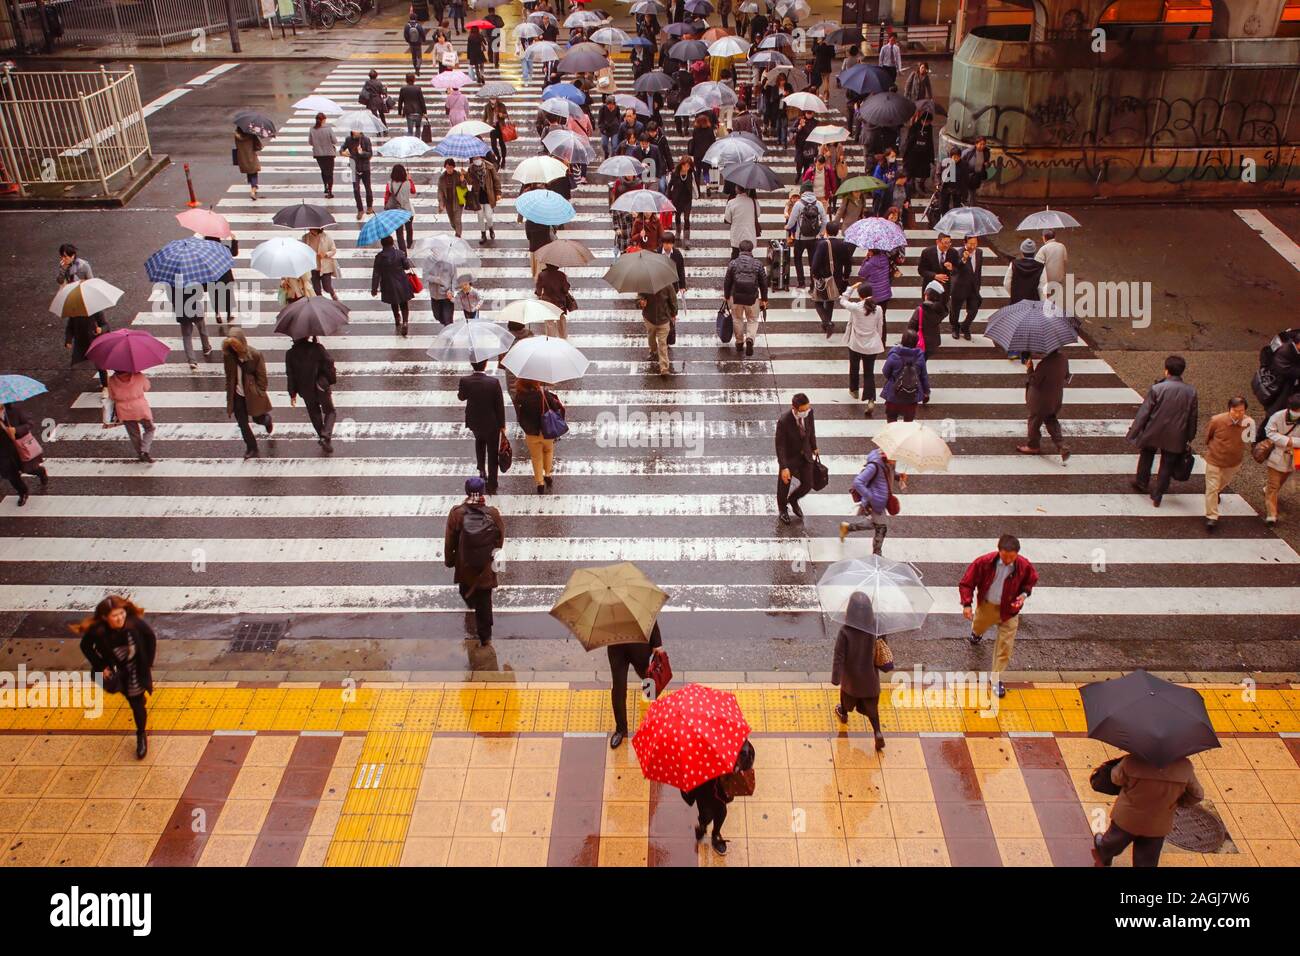 TOKYO, JAPAN - NOVEMBER 25, 2014: People walking under rain in a pedestrian crossing in Tokyo, Japan. Stock Photo